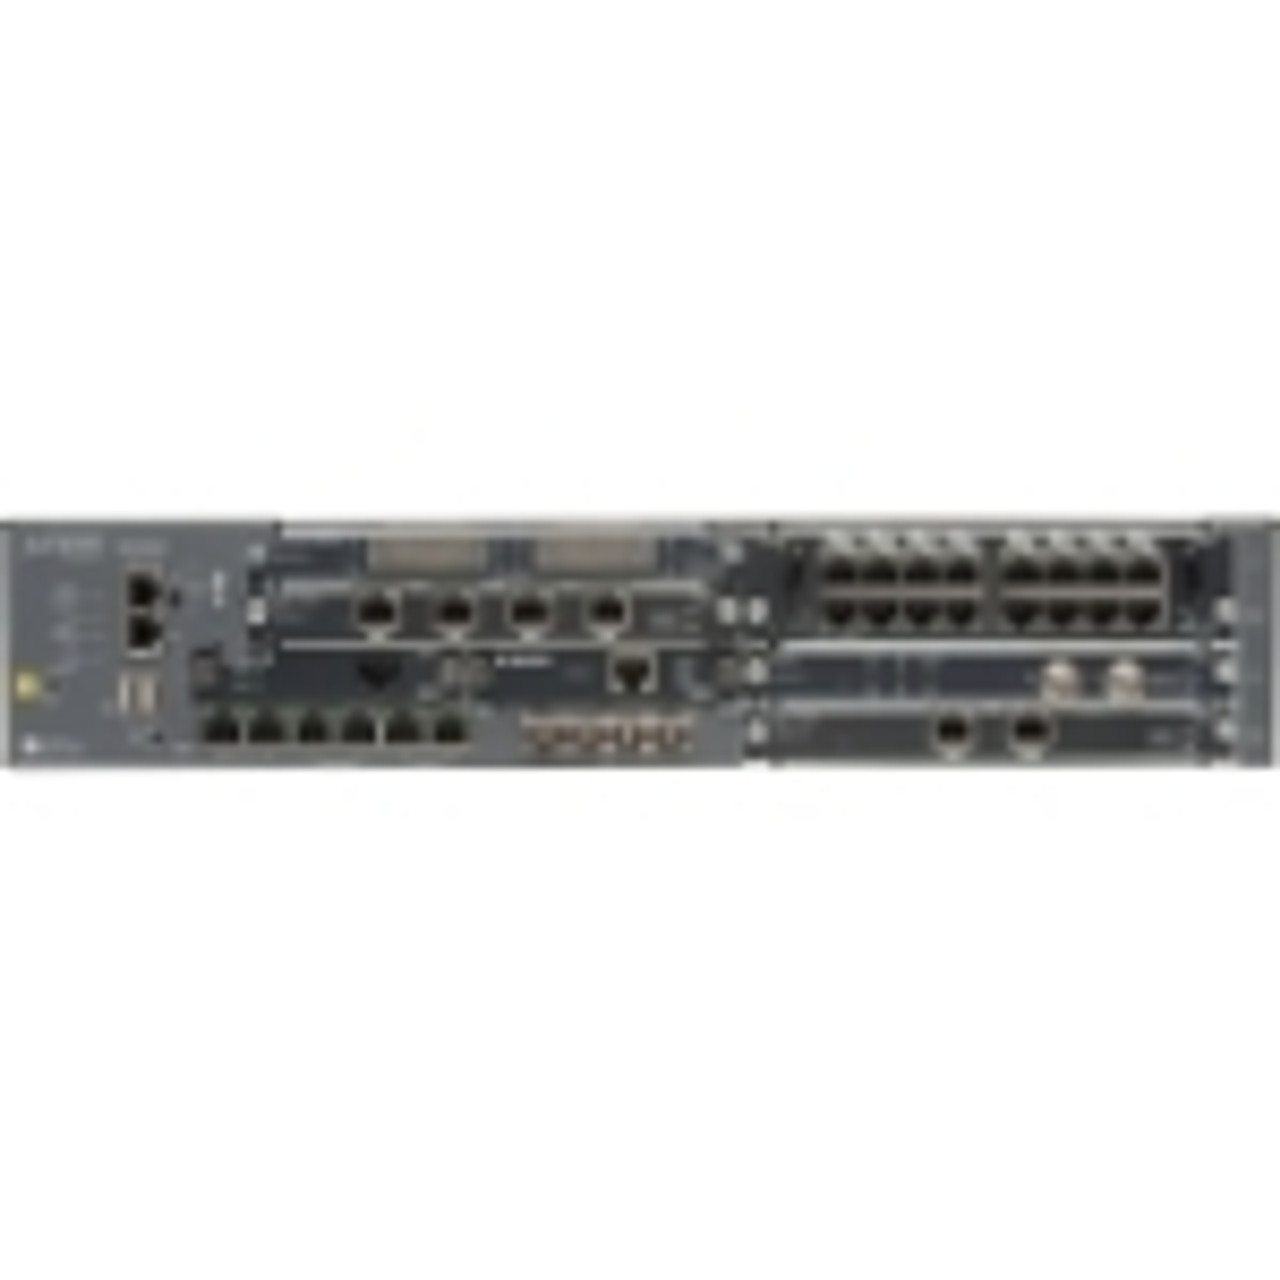 SRX550-645DP-TAA Juniper SRX550 Services Gateway 6 Ports Management Port 12 Slots Gigabit Ethernet 2U Rack-mountable (Refurbished)